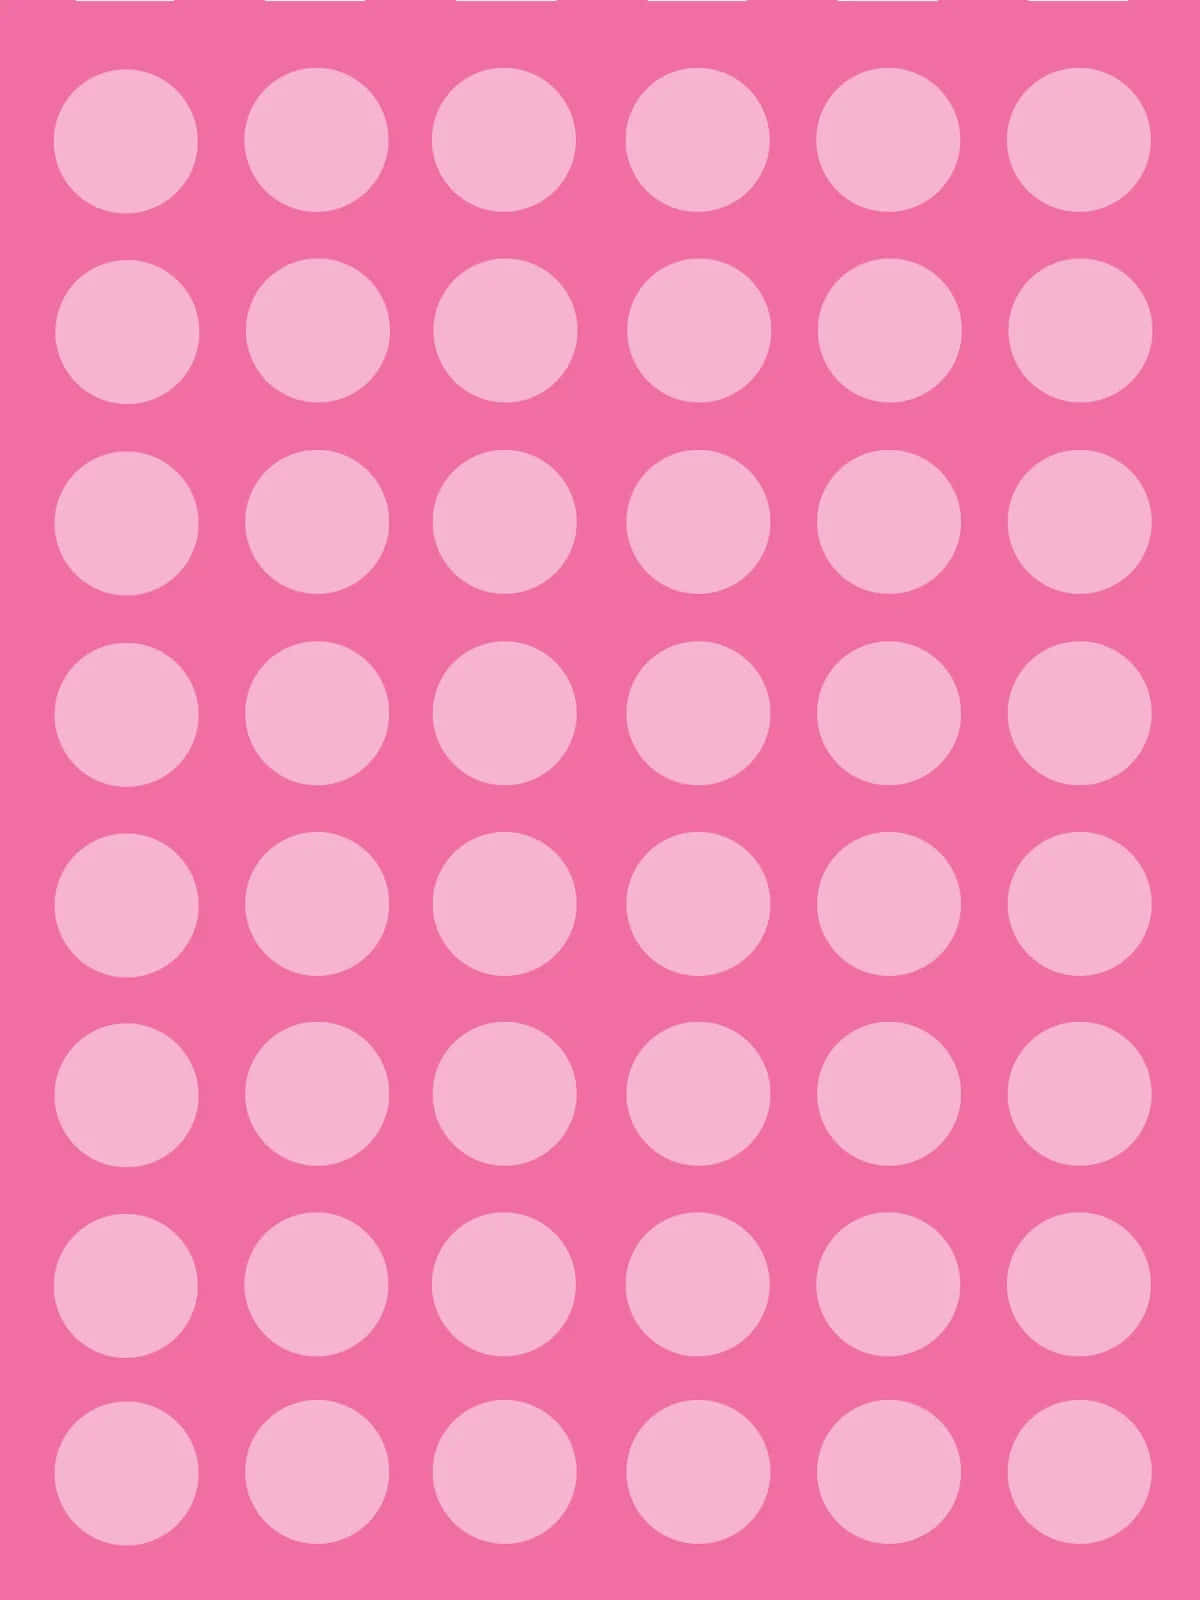 Download Pink Polka Dot Background